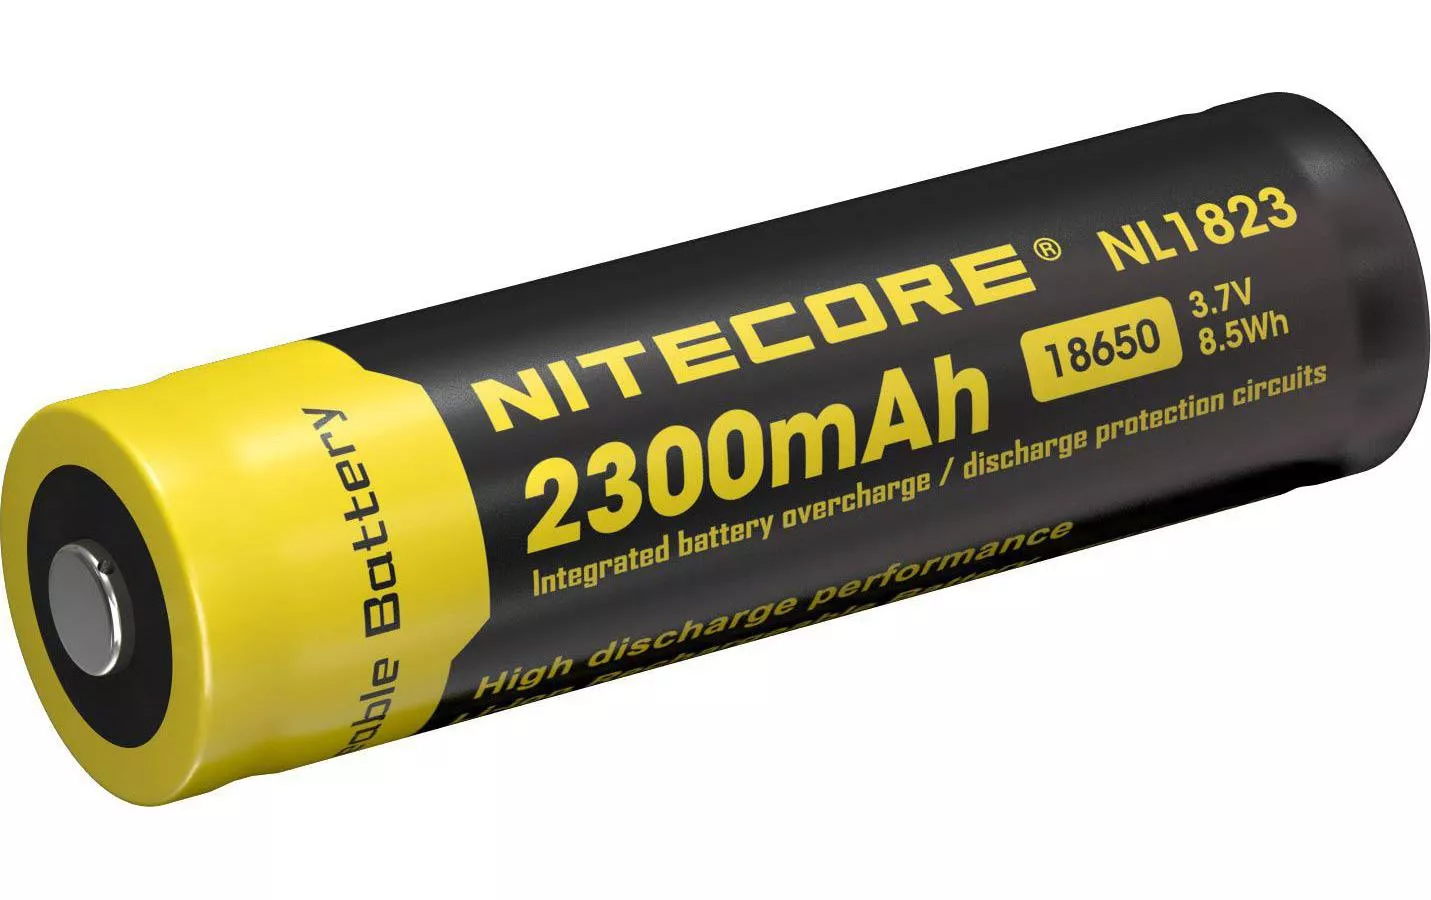 Batterie NL1823 18650 2300 mAh